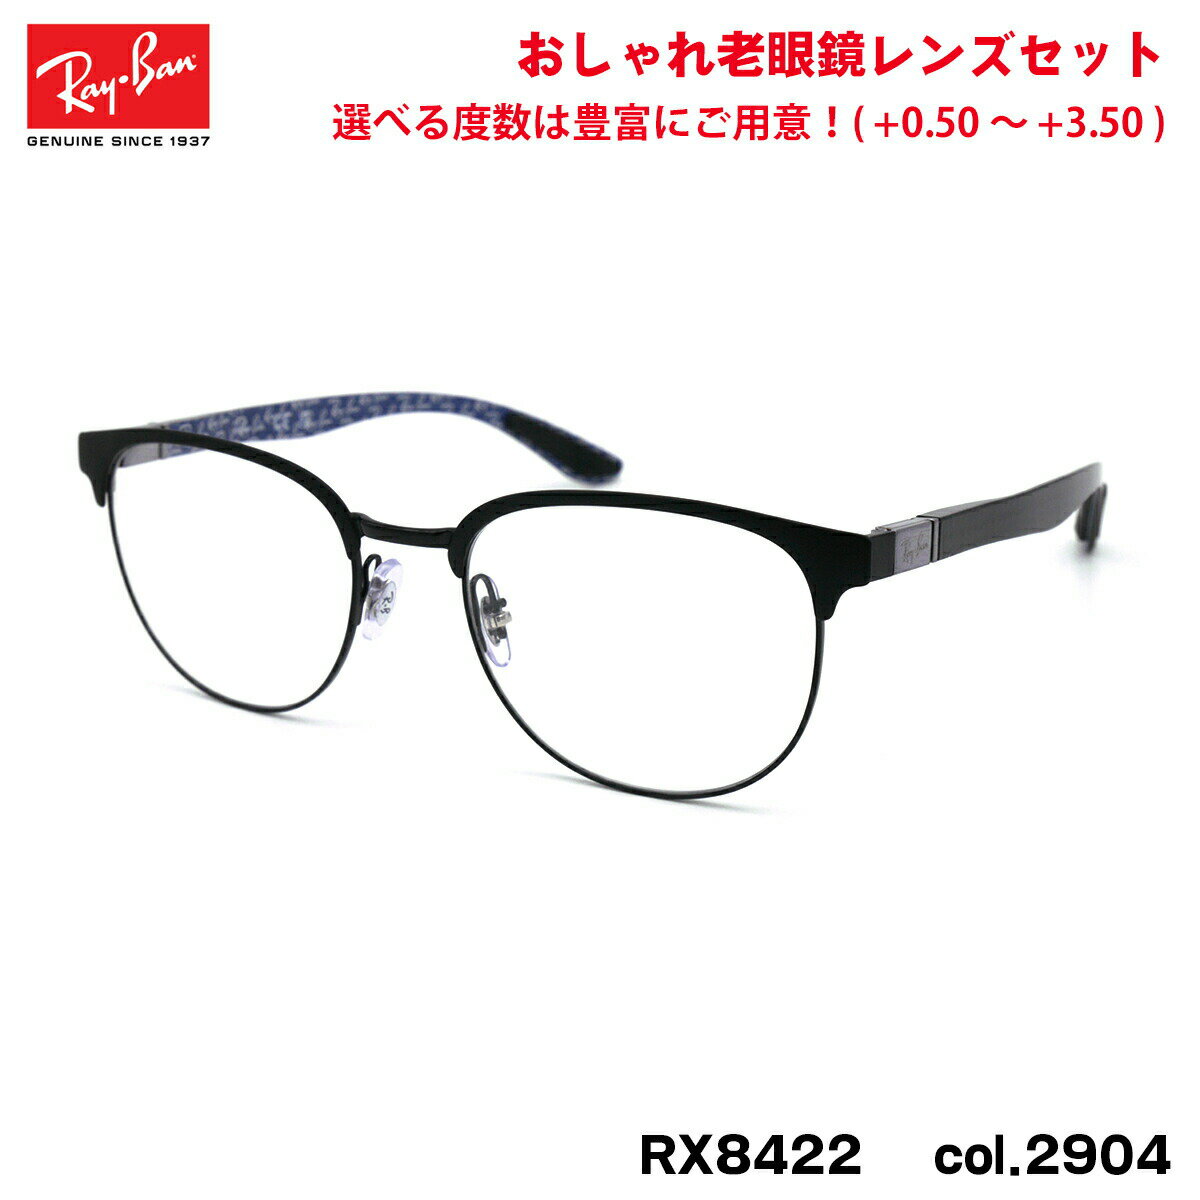 レイバン 老眼鏡 RX8422 (RB8422) 2904 52mm Ray-Ban バネ丁番 カーボンファイバー UVカット ブルーライトカット